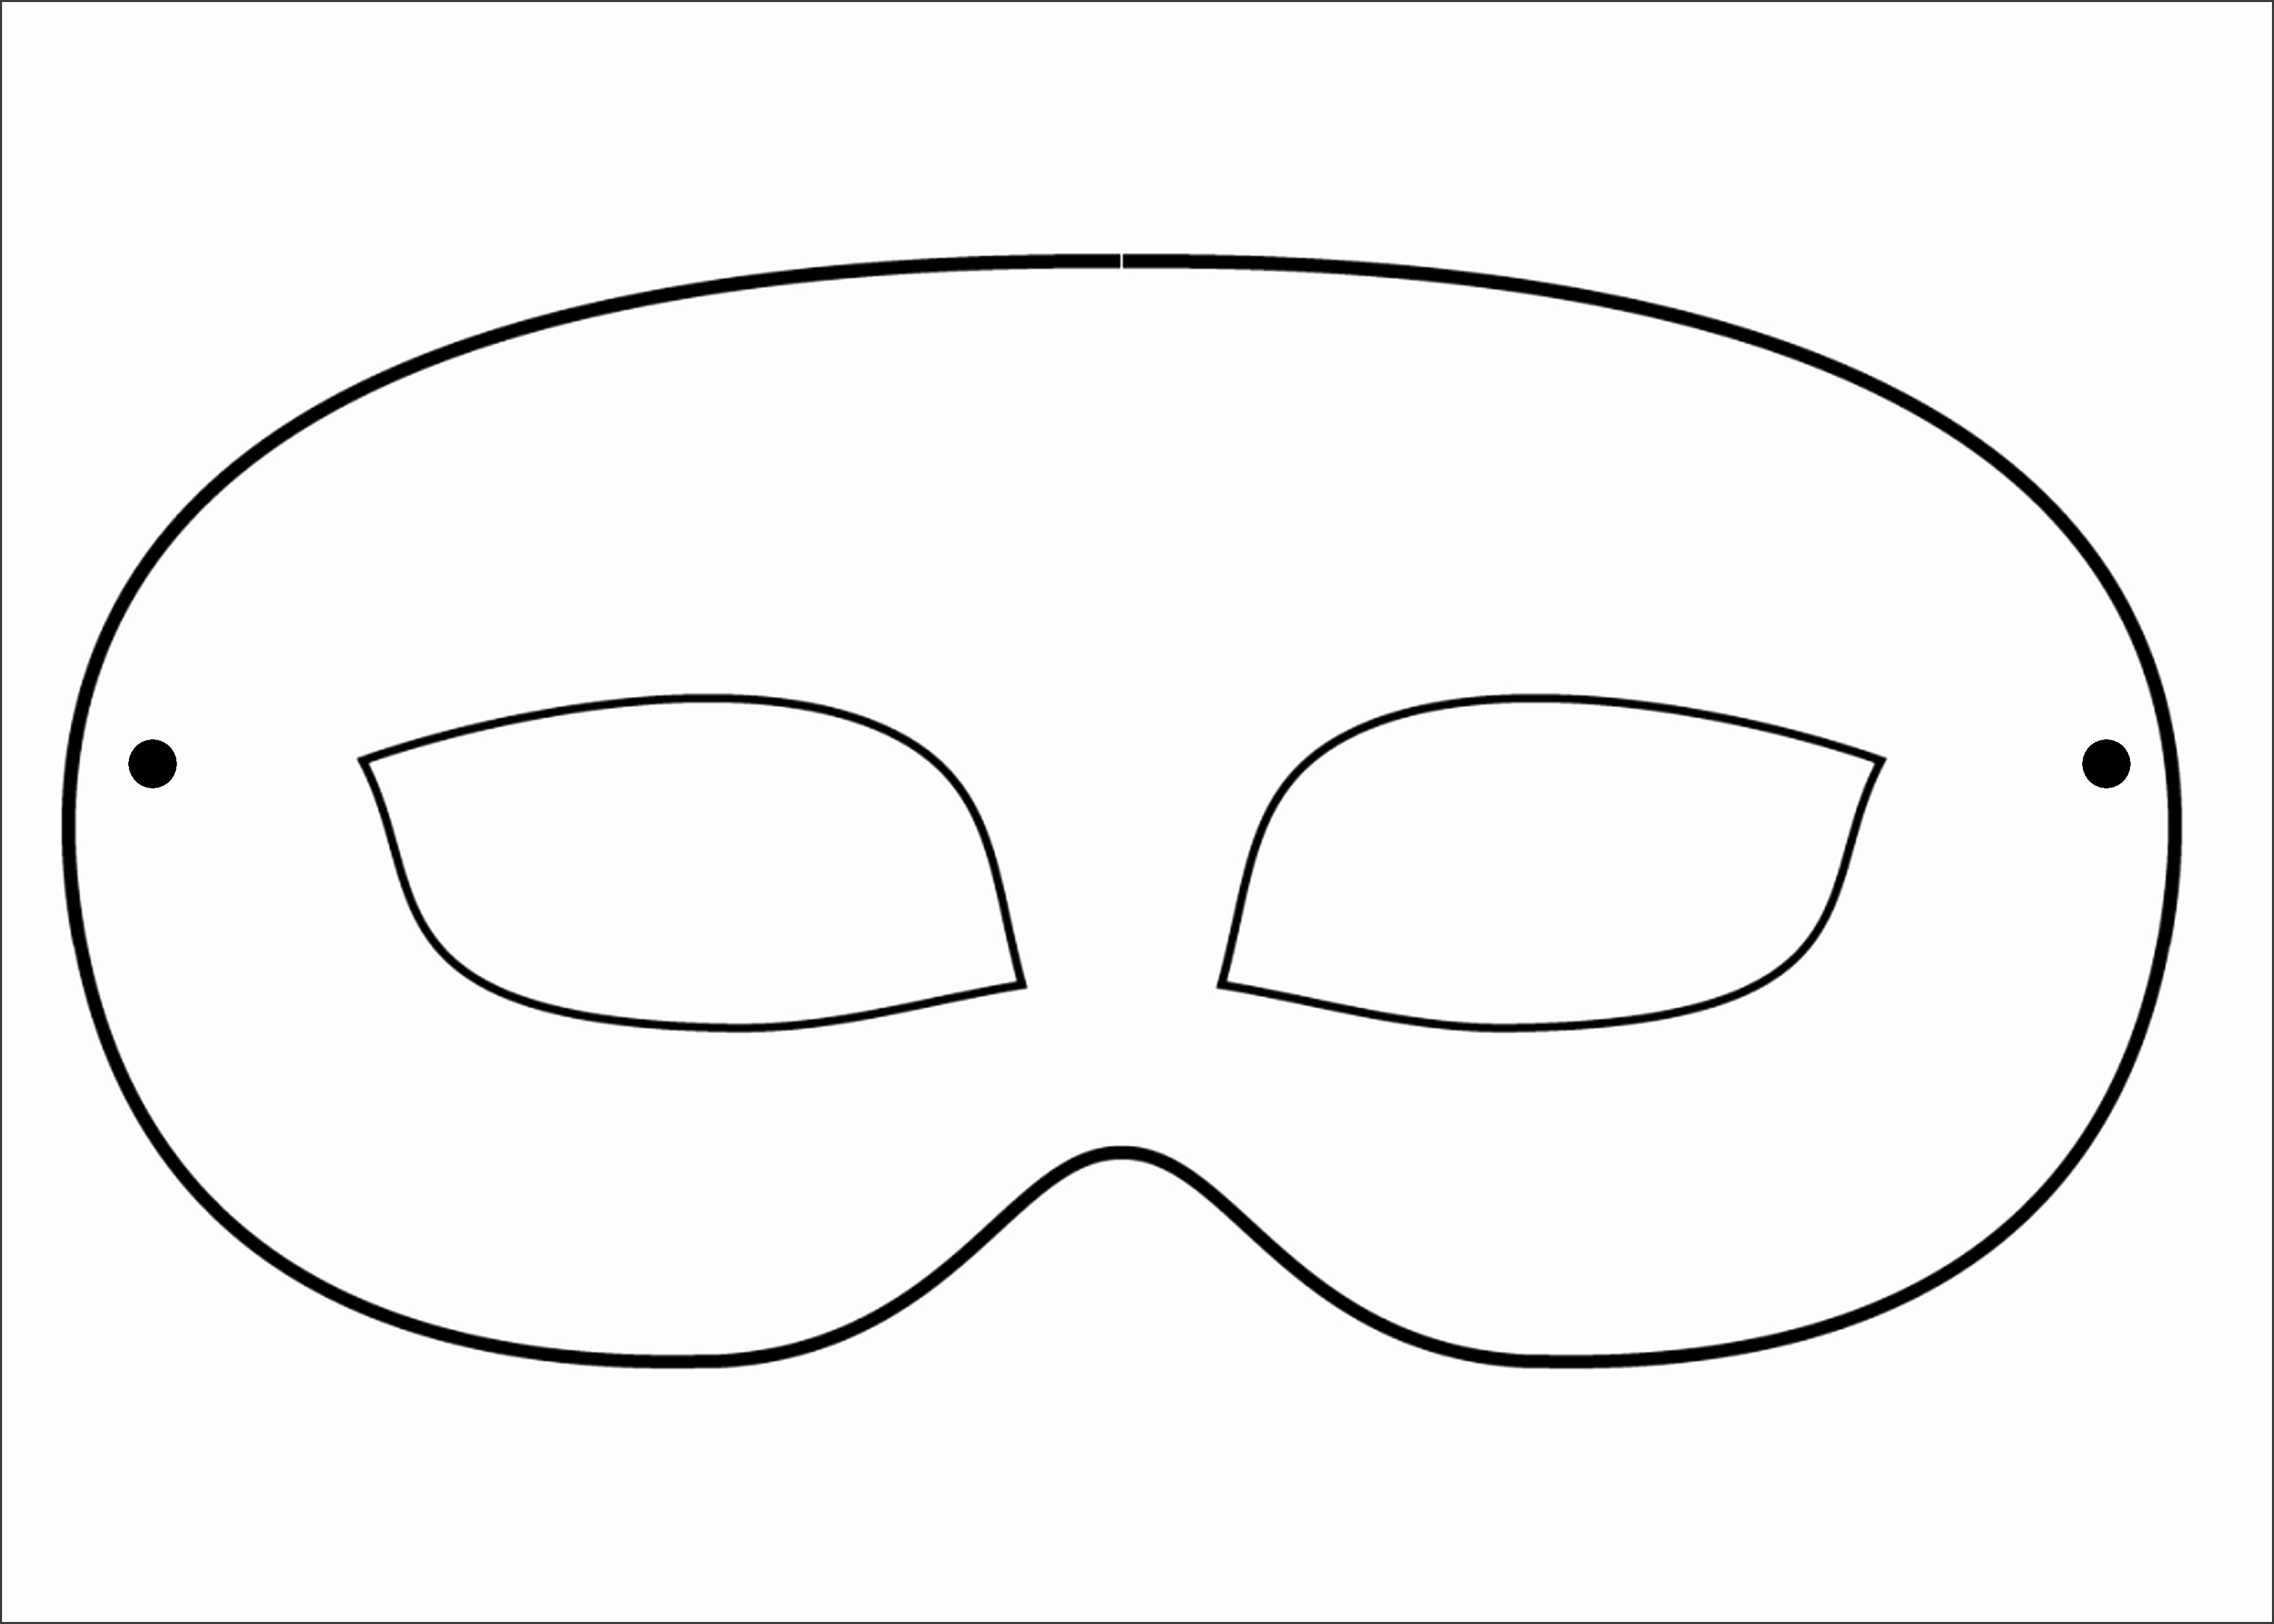 6 Mask Templates For Children SampleTemplatess SampleTemplatess